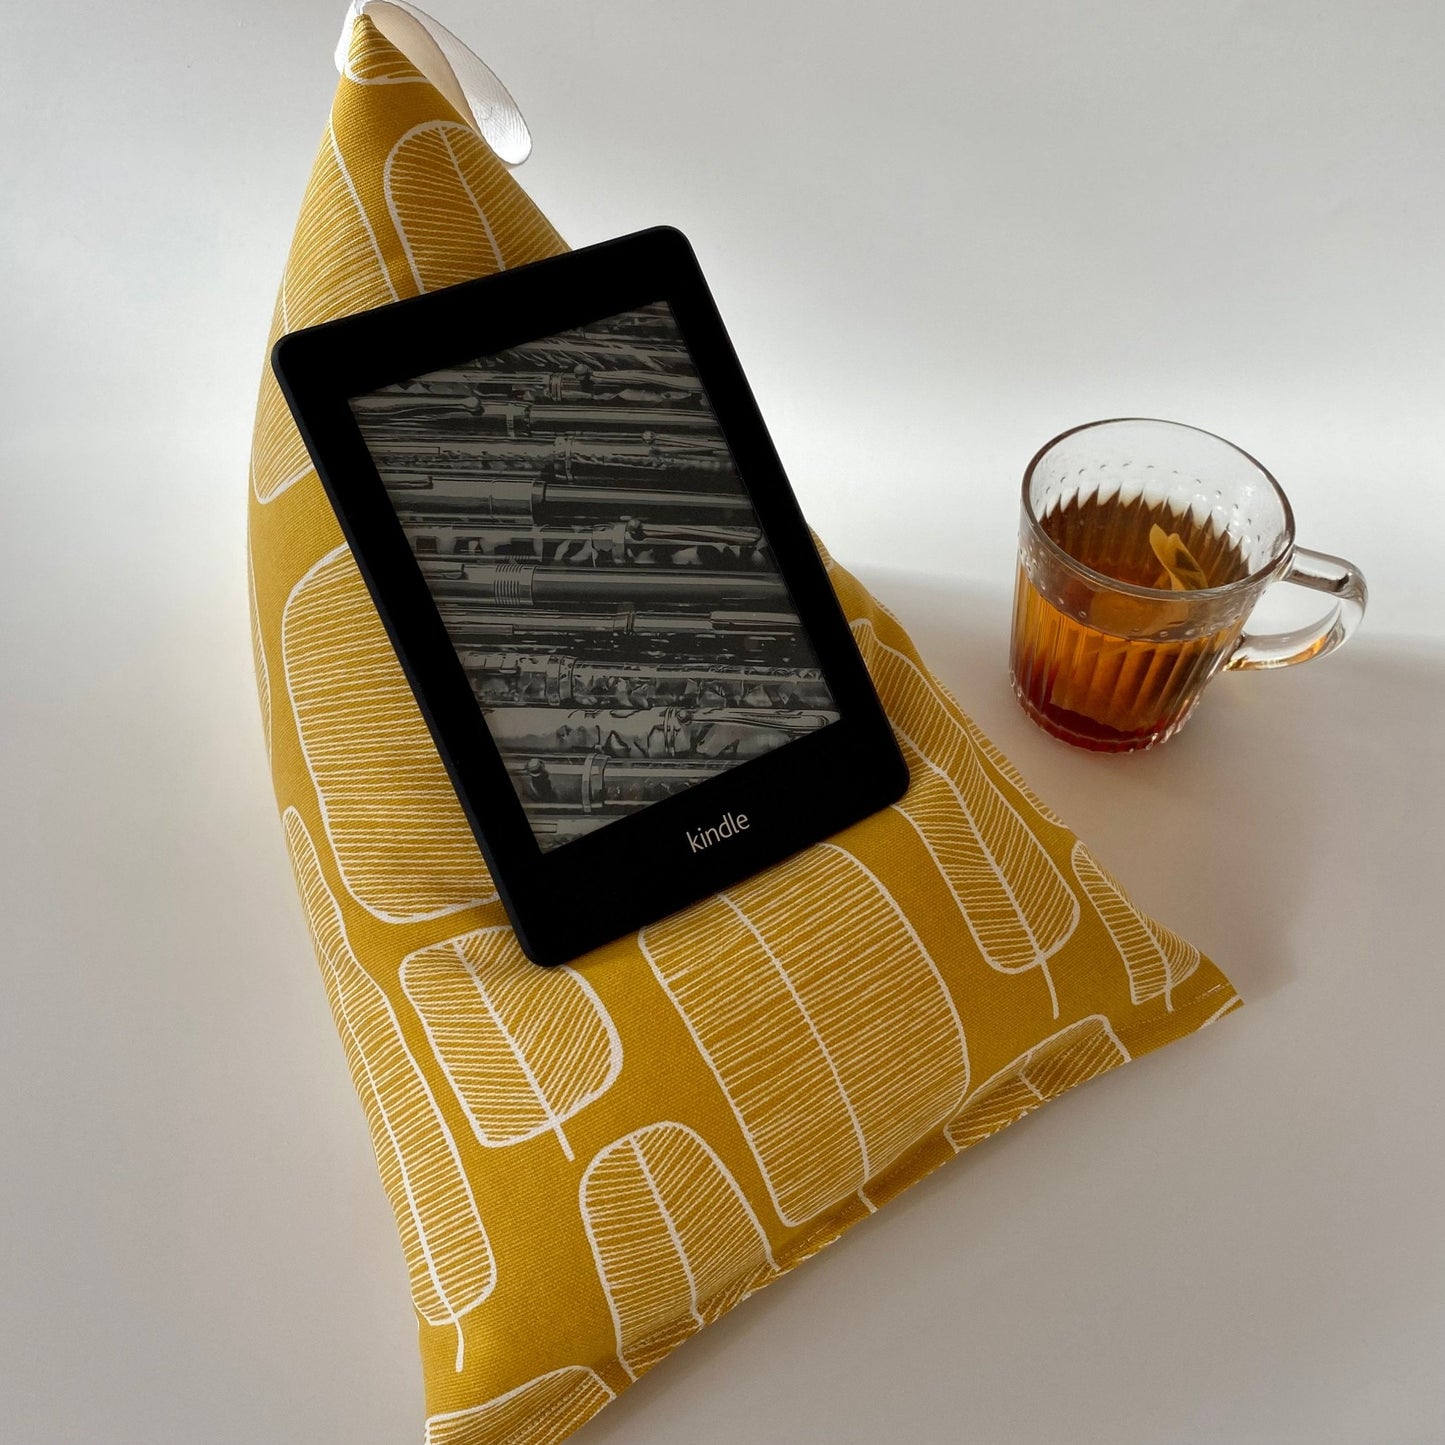 Green Stars iPad Cushion - katywebsterhomeware